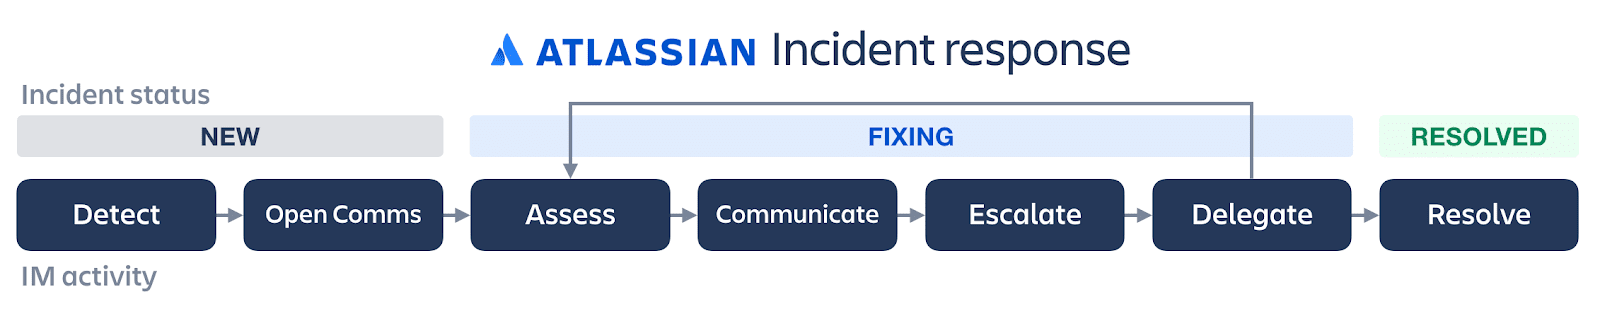 Схема жизненного цикла реагирования на инциденты компании Atlassian